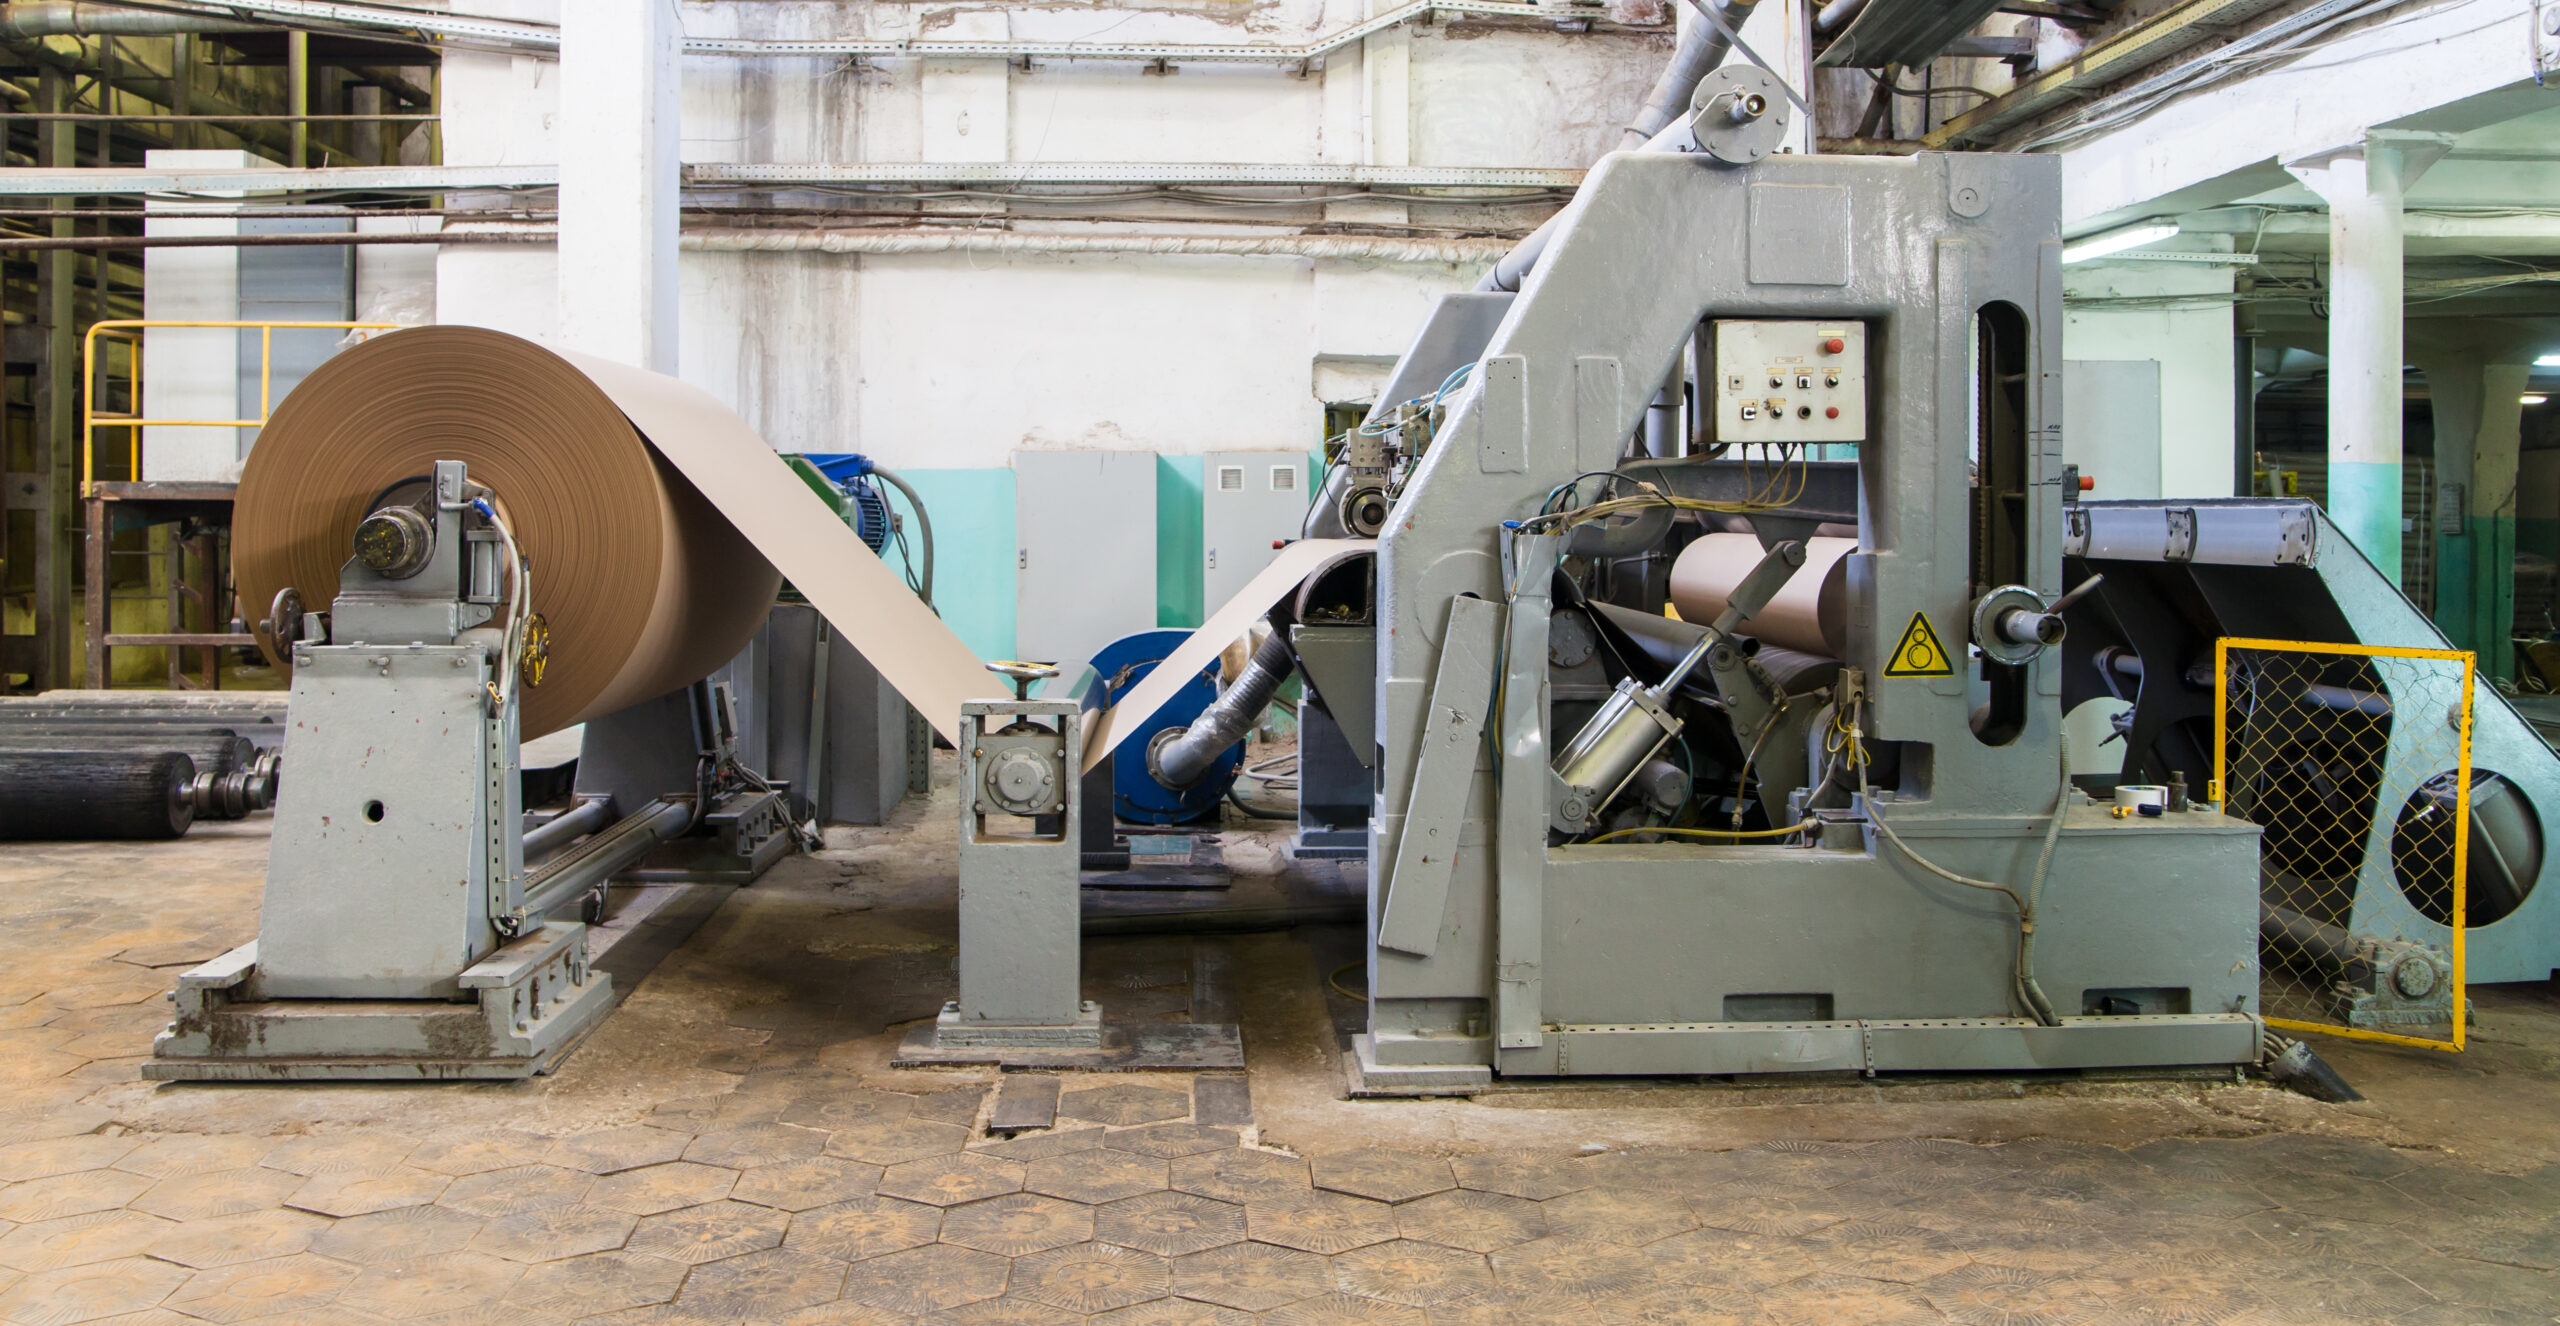 Machine at paper manufacture